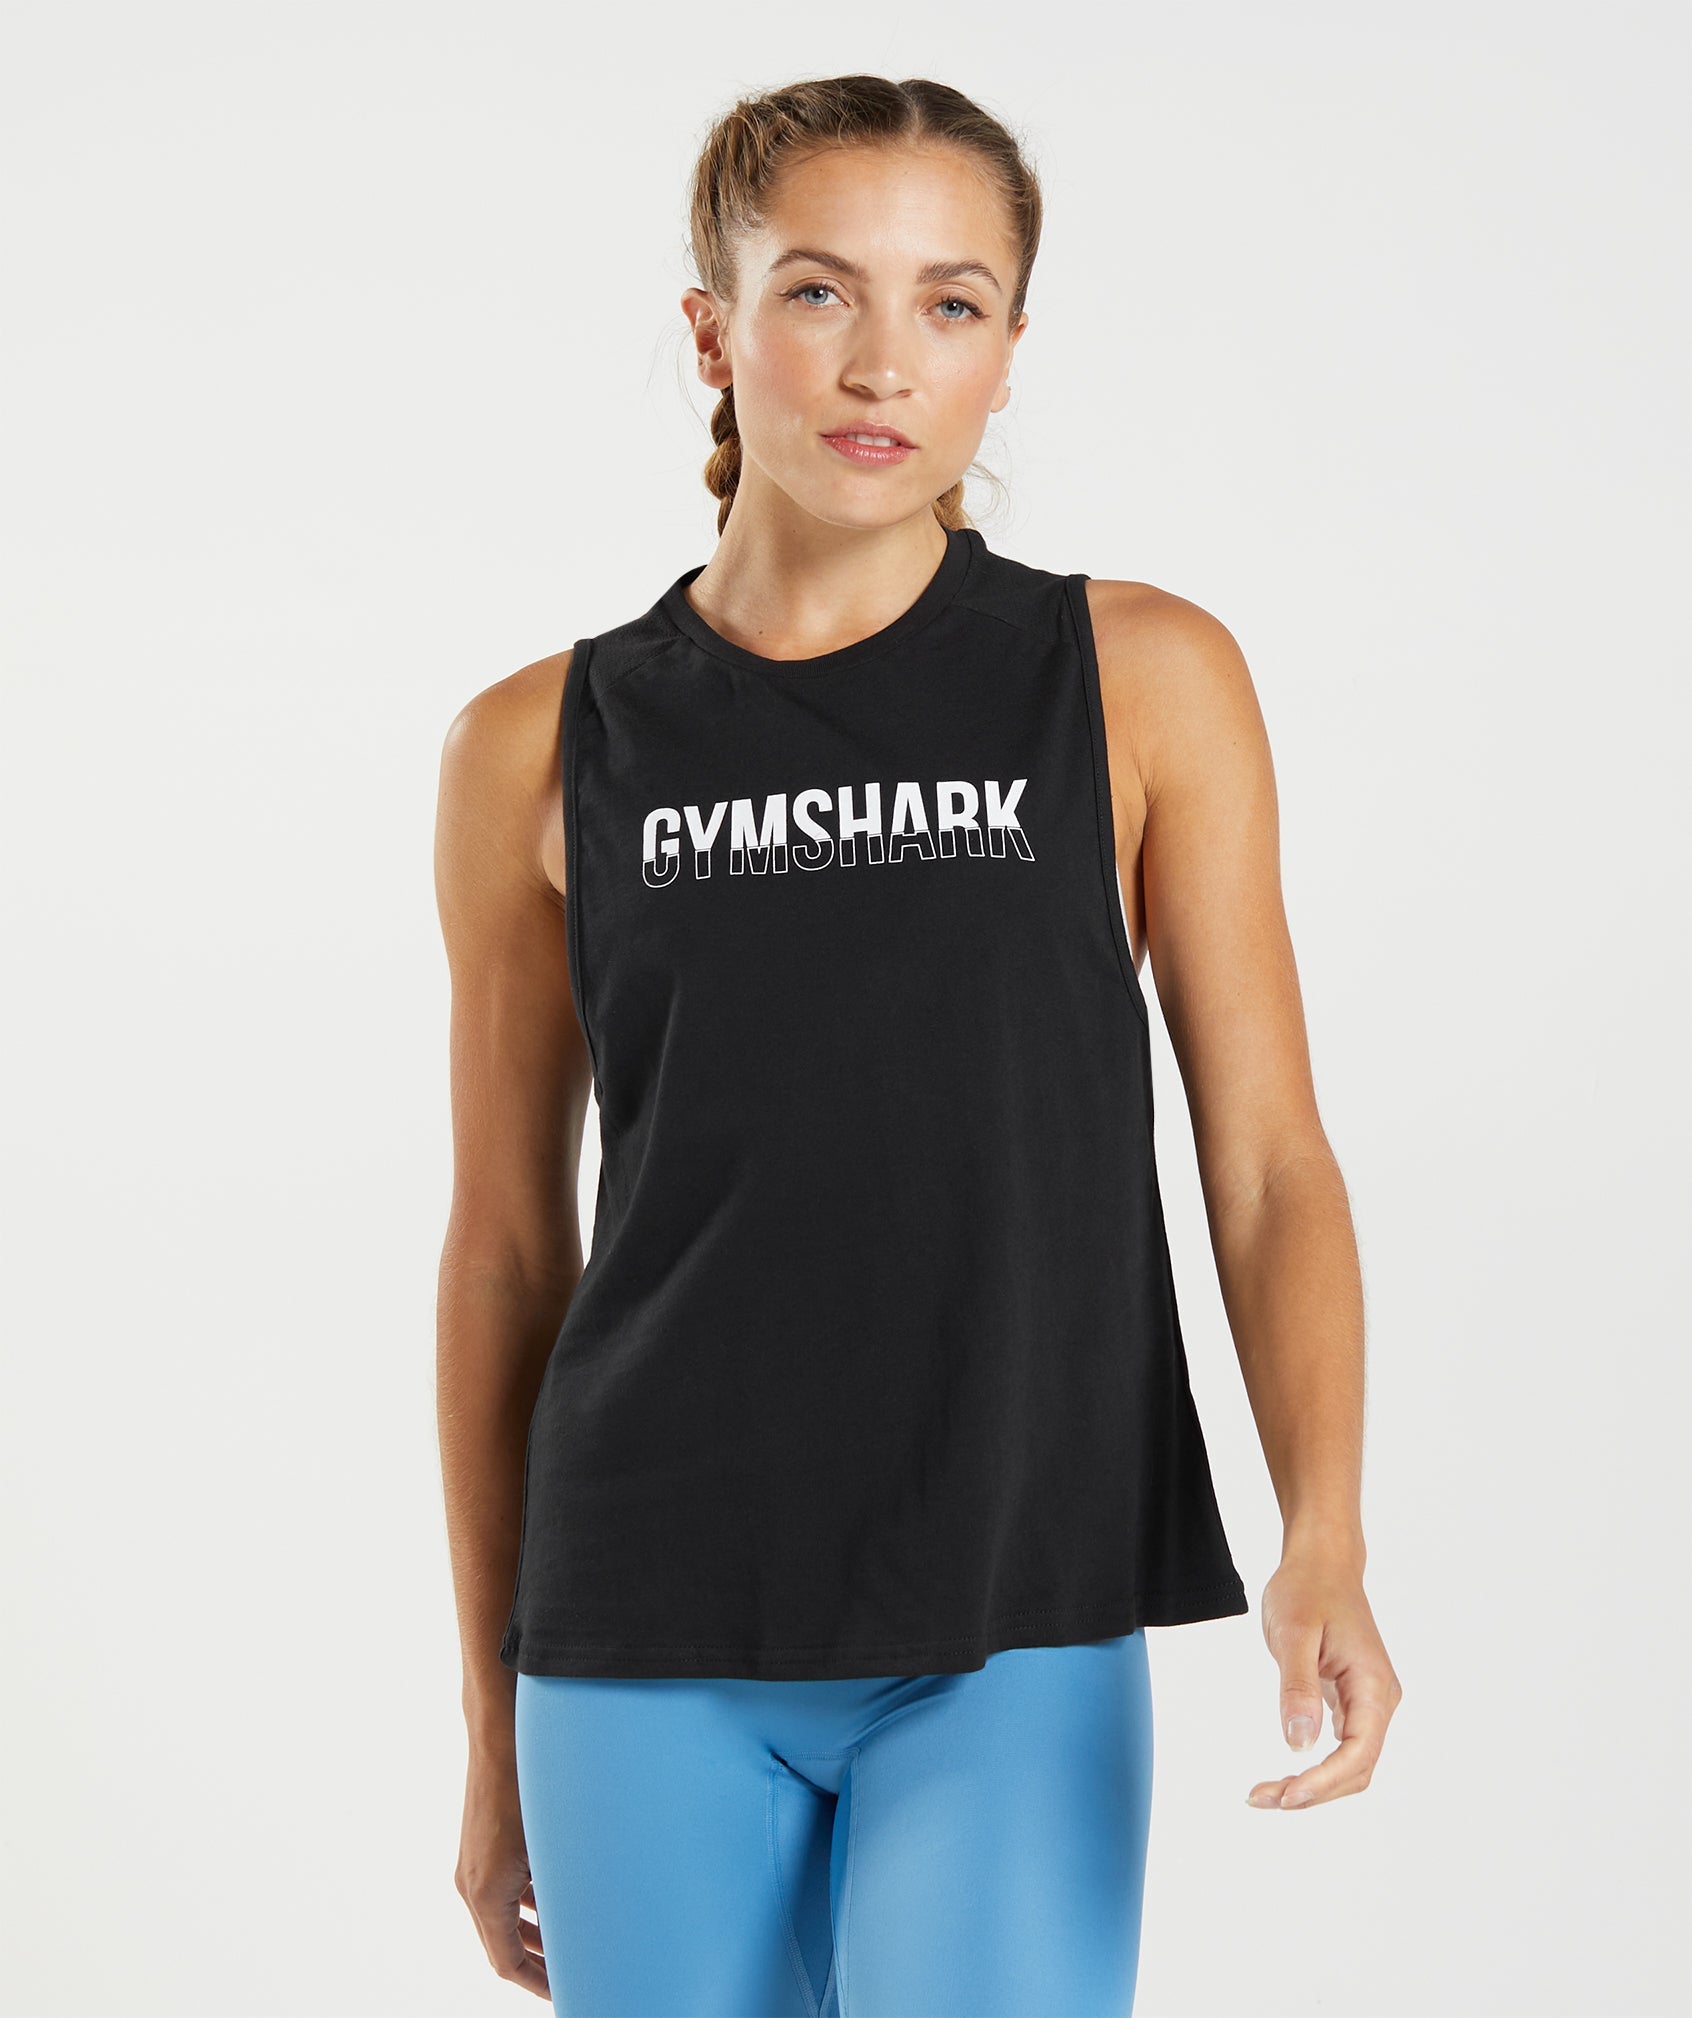 Gymshark Fraction Tank - Black/White